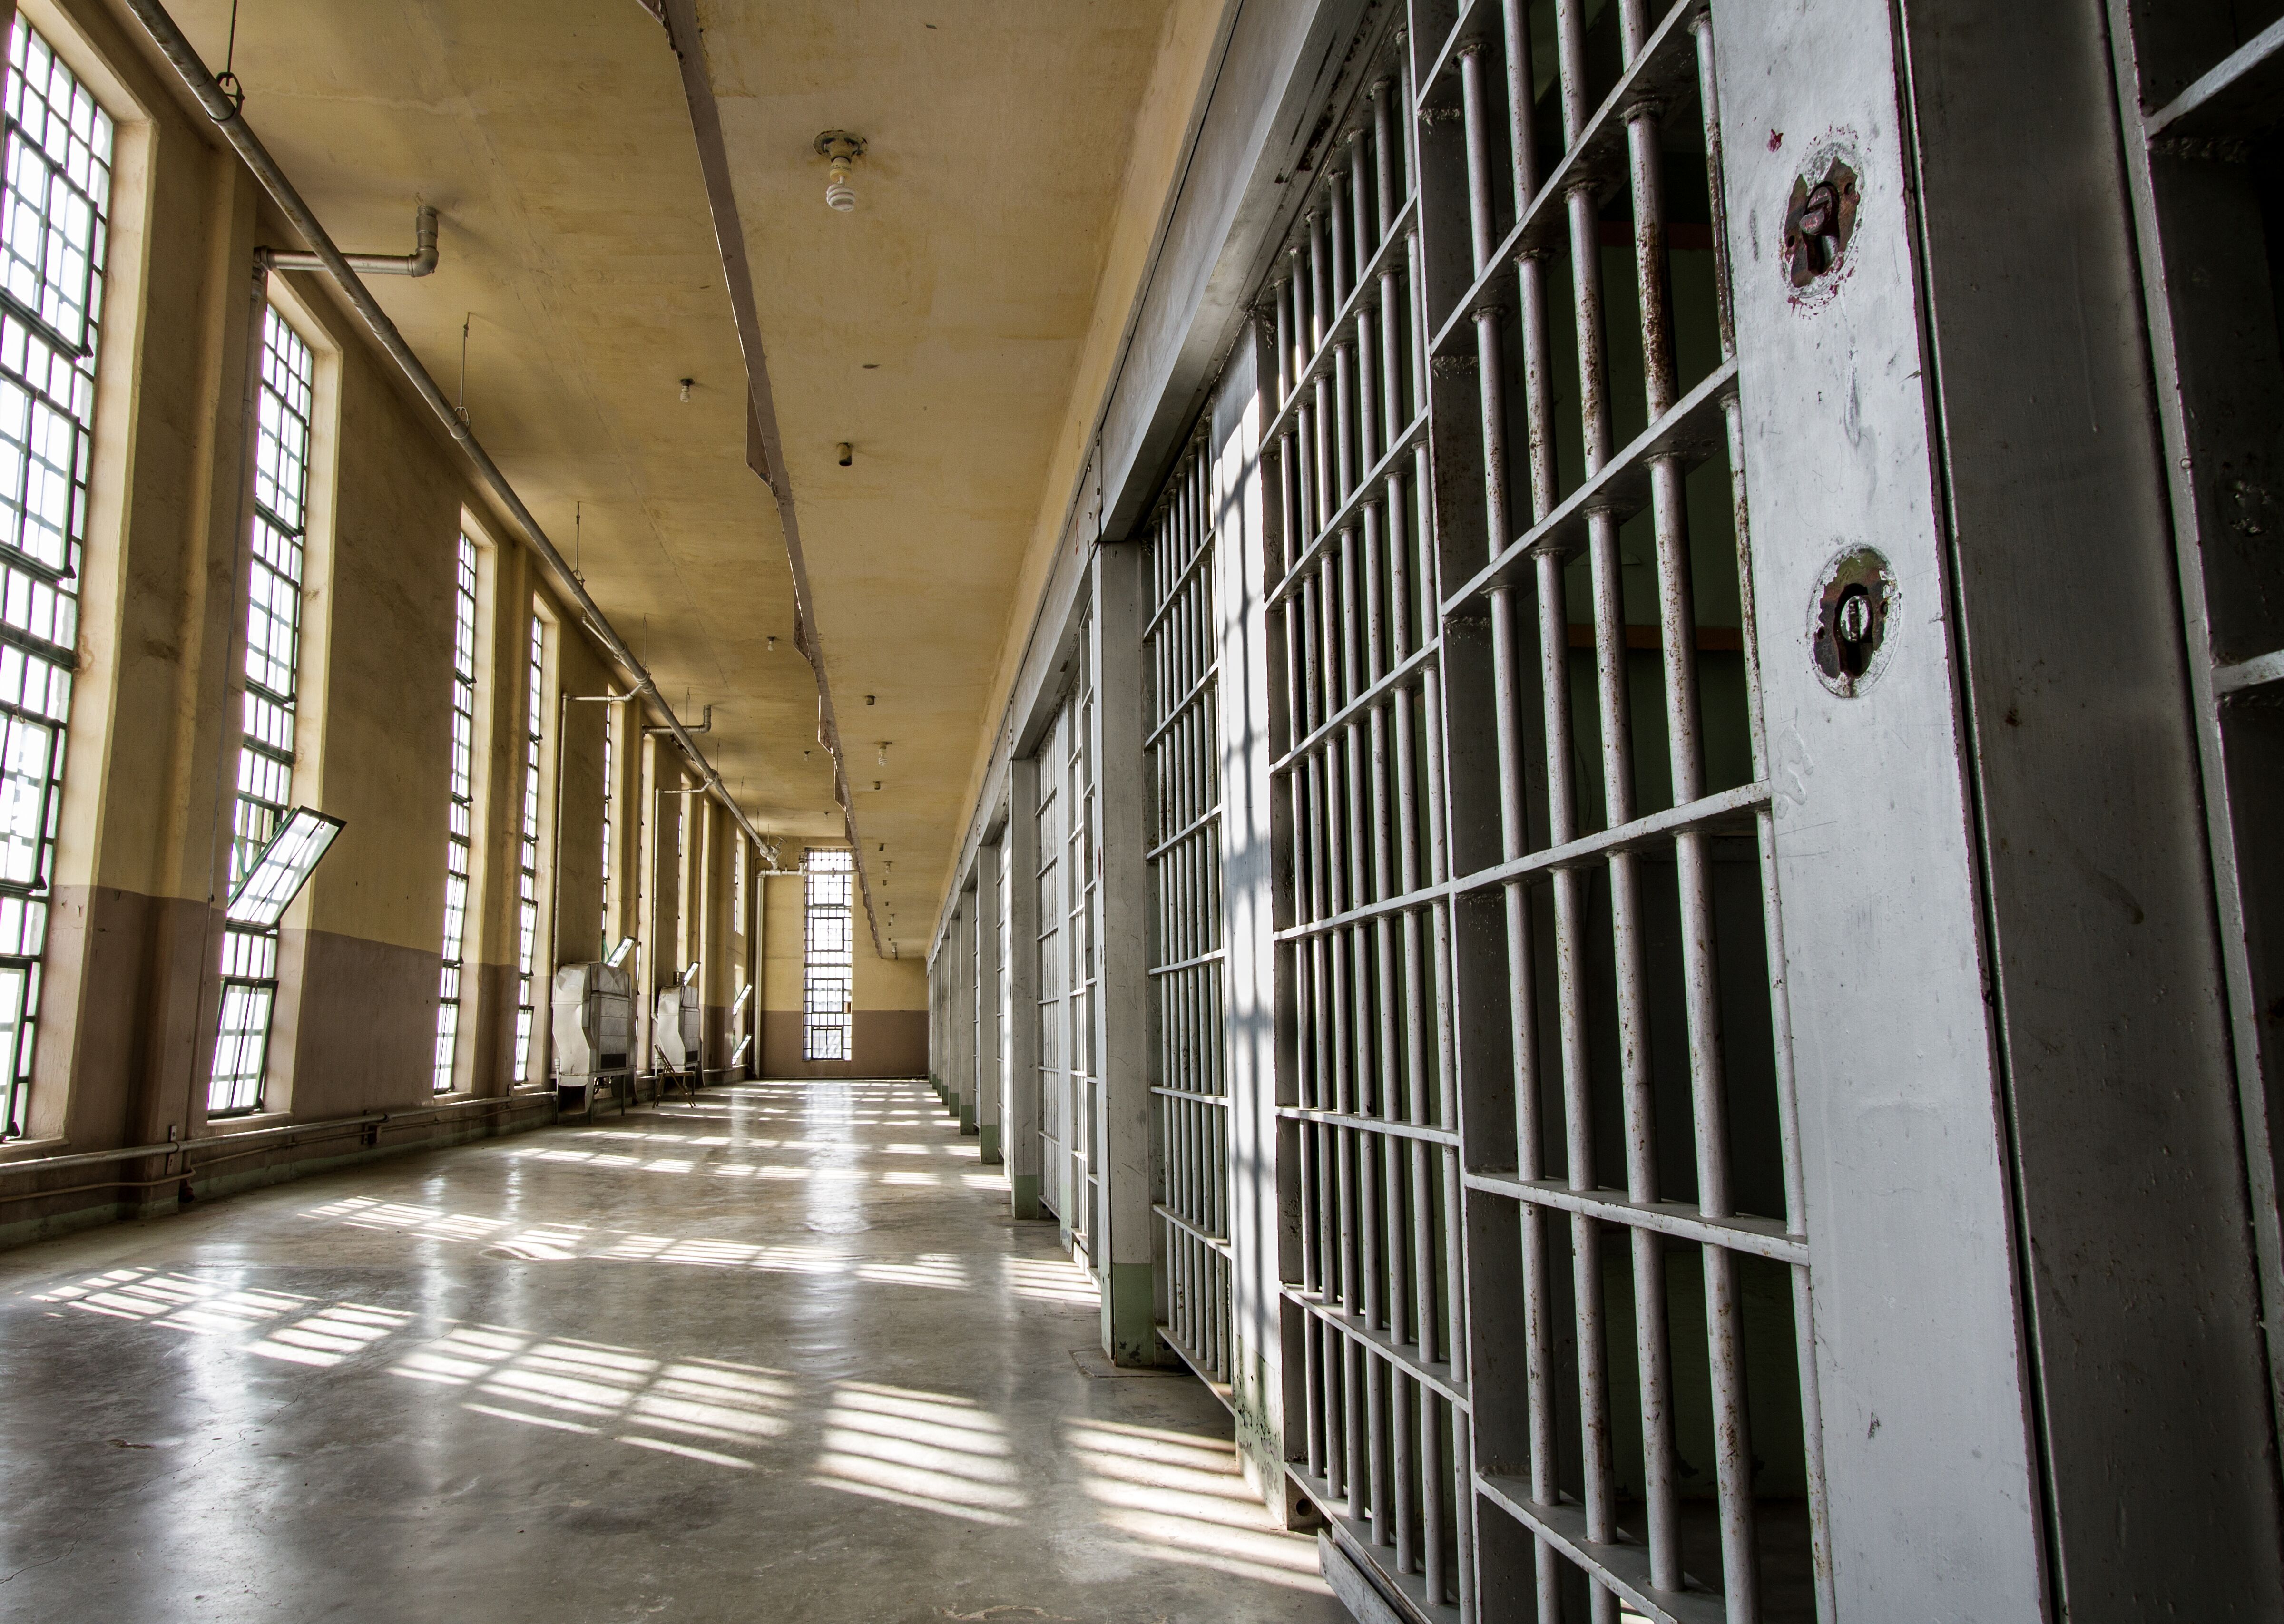 Vue de l'intérieur d'un établissement pénitentiaire | Photo : Getty Images